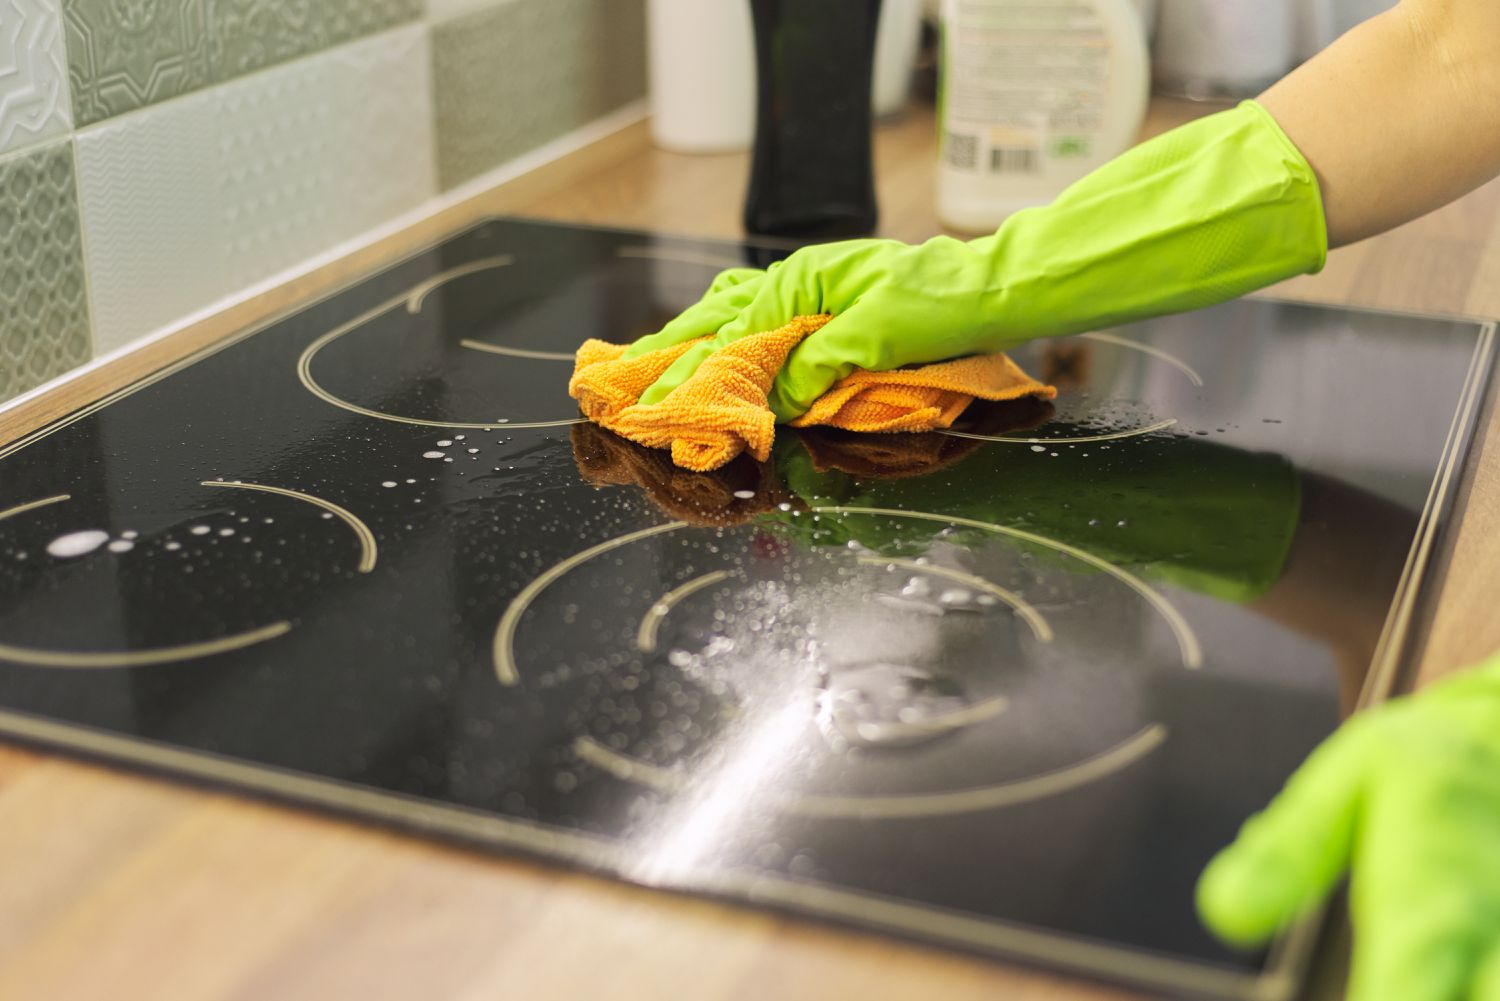 چگونه به شکل اصولی گاز آشپزخانه را تمیز کنیم؟